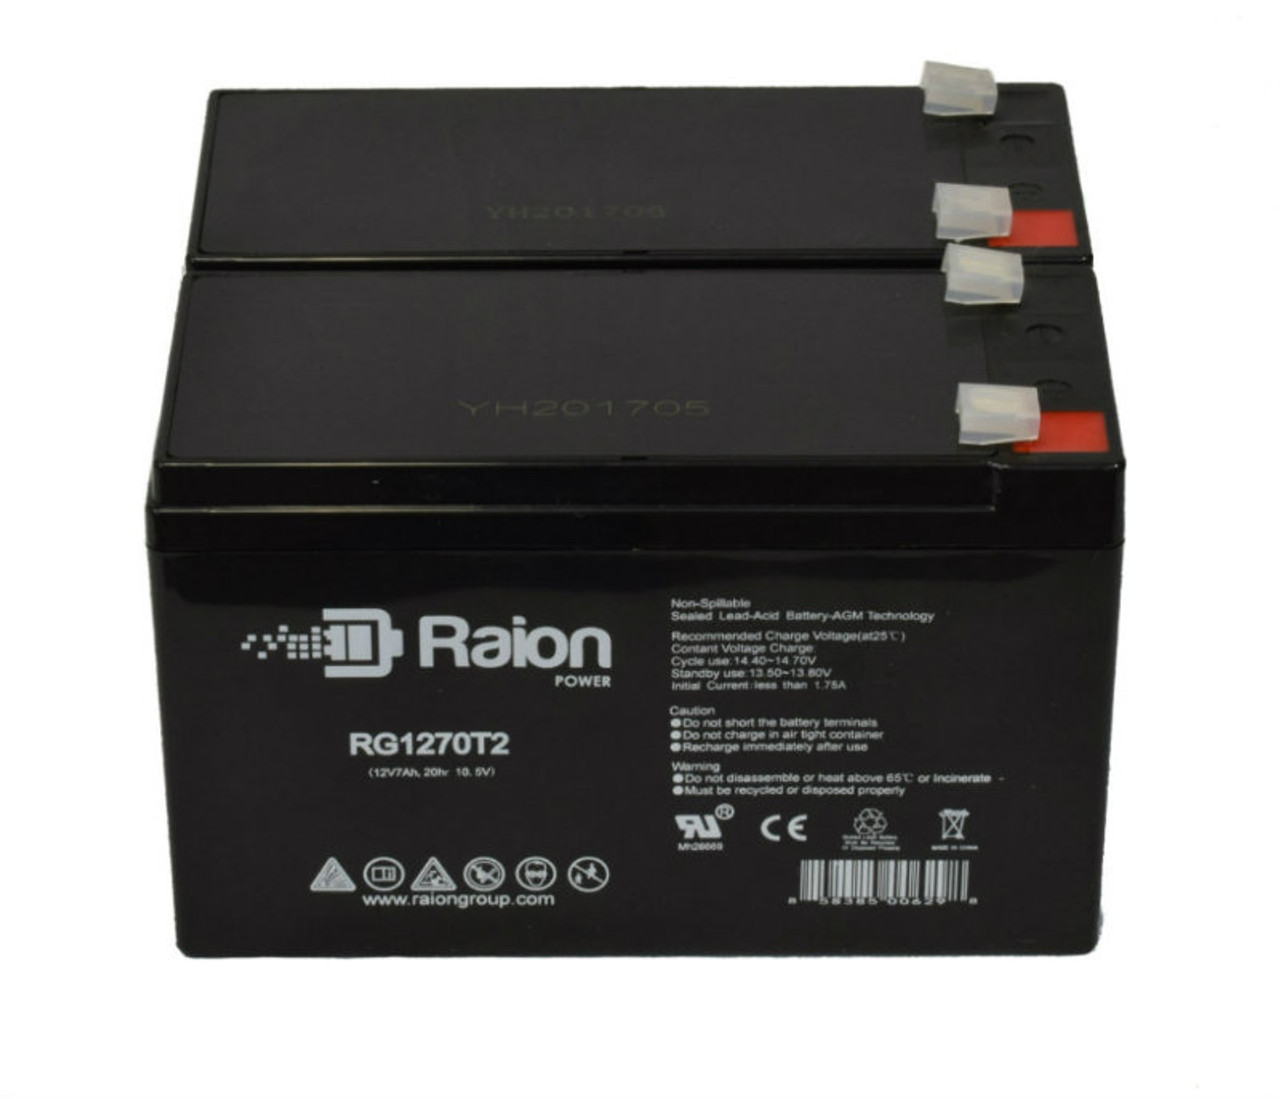 Raion Power Replacement 12V 7Ah Battery for Kinghero SJ12V6.5Ah - 2 Pack